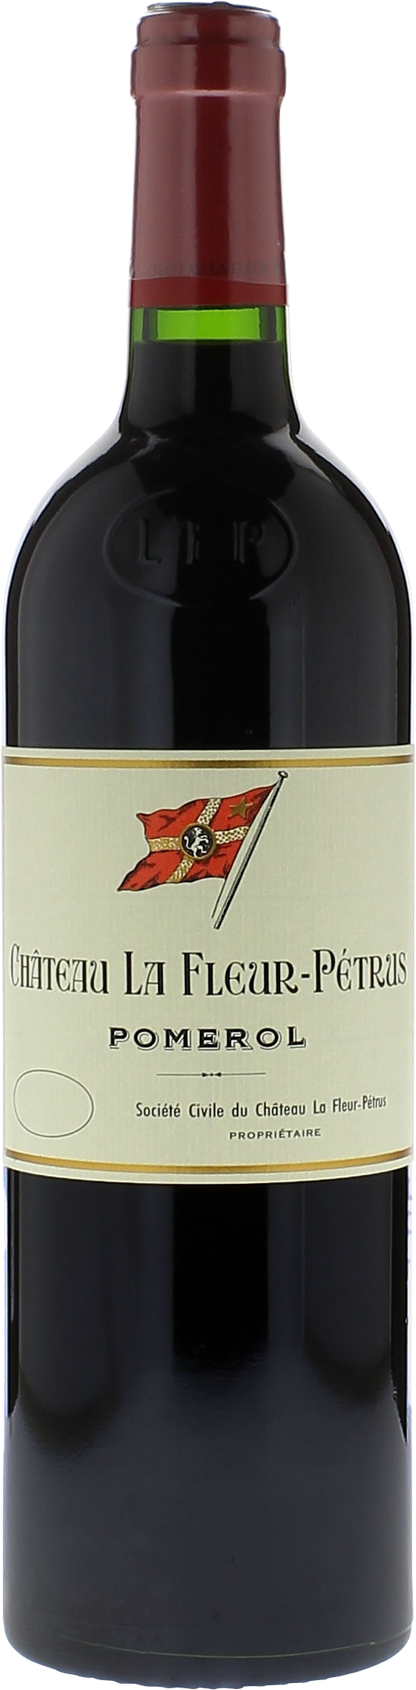 Château La Fleur-Pétrus 2016 Pomerol Rouge 0,75cl